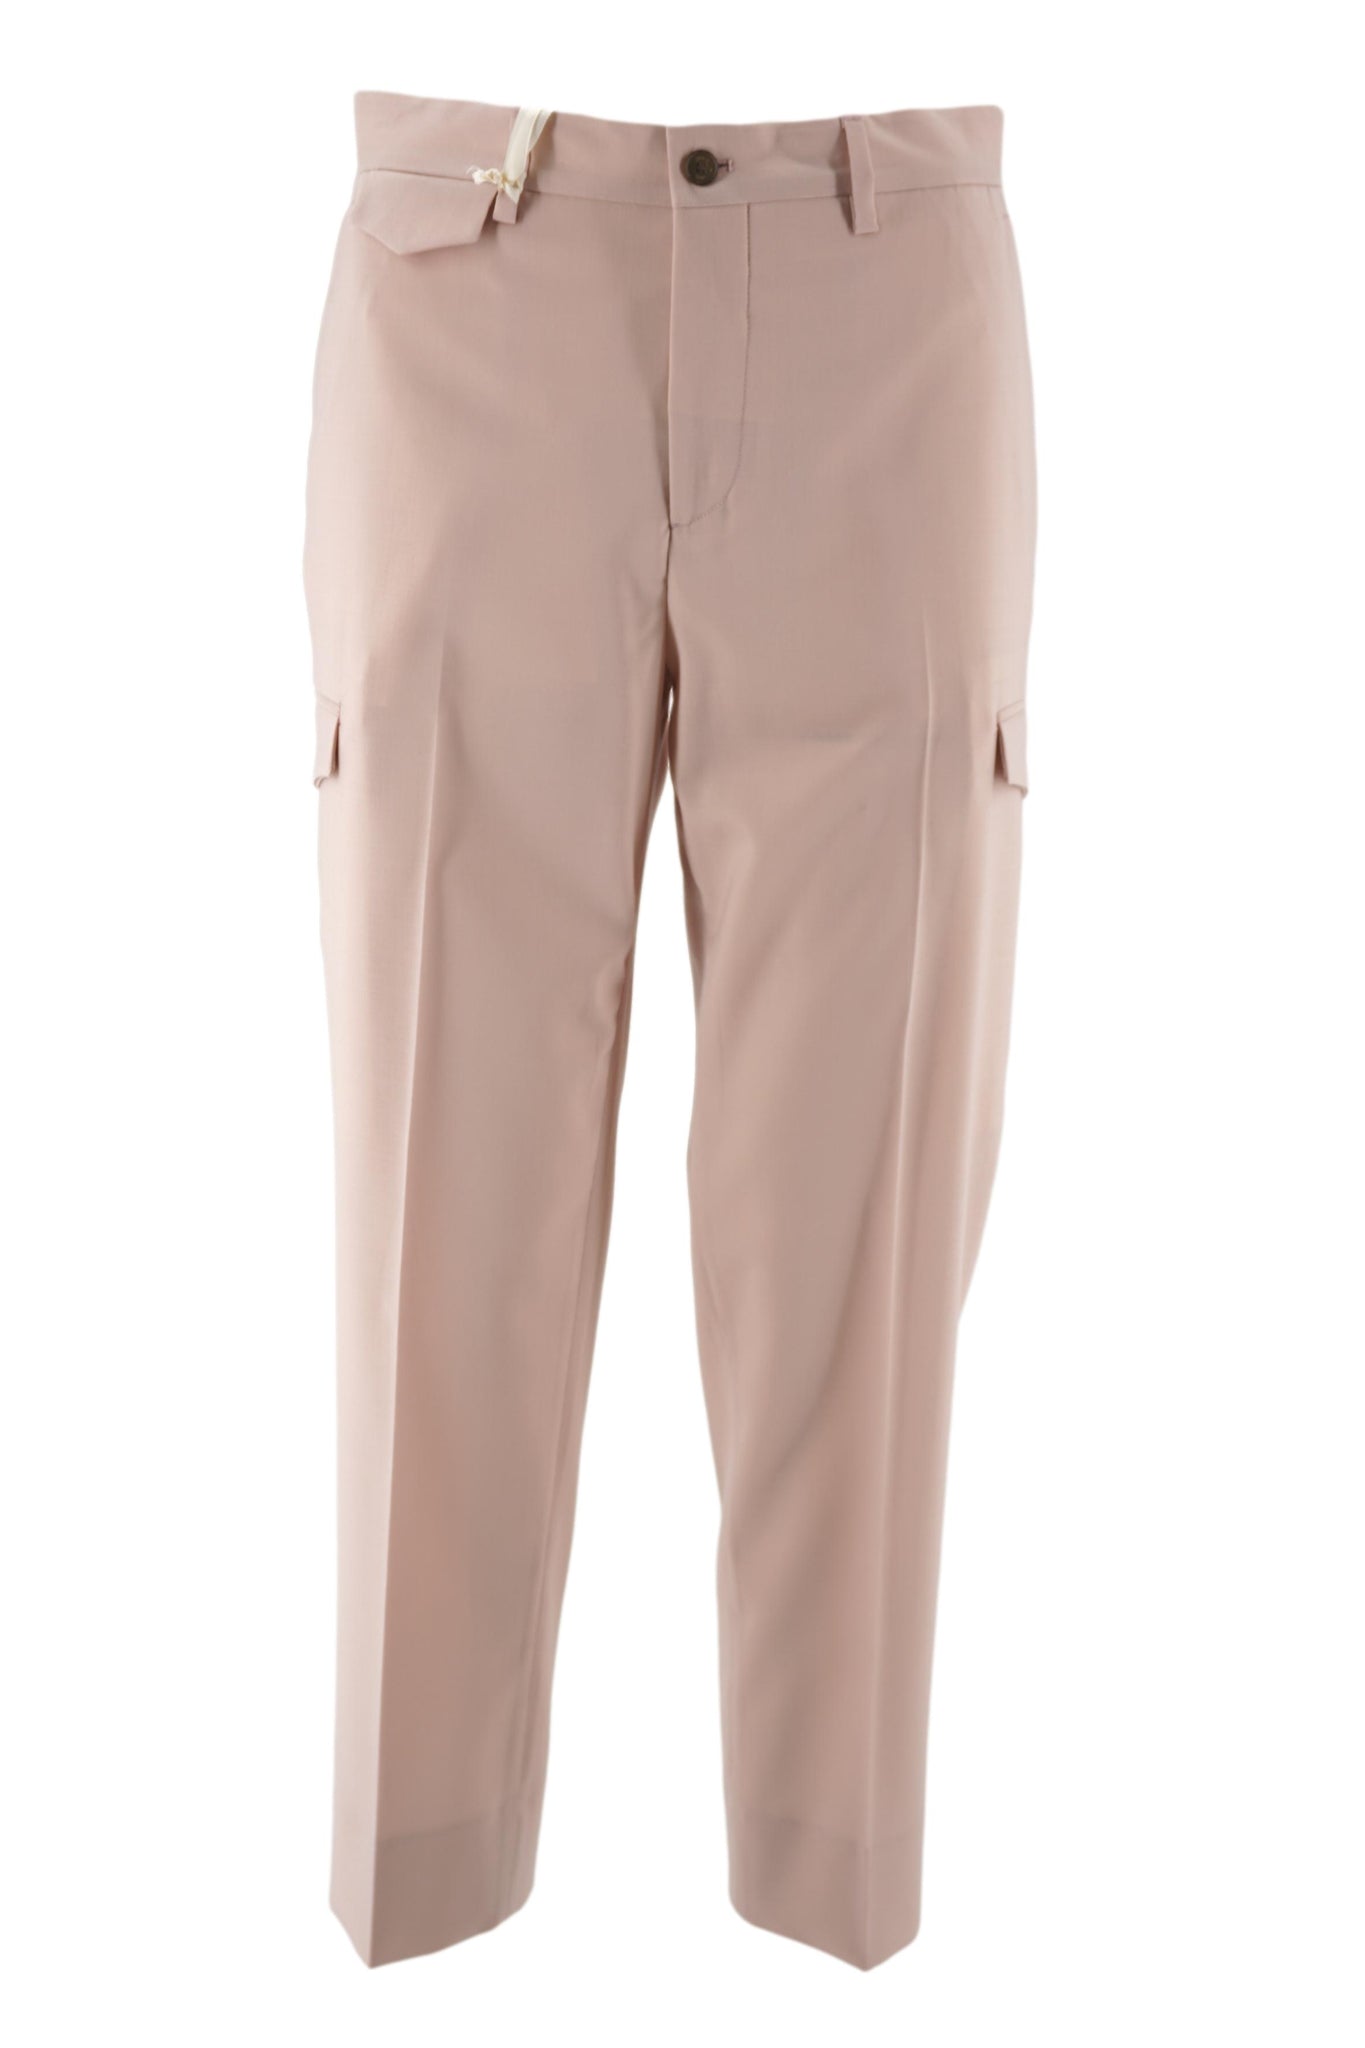 Pantalone in Lana Tasconato / Rosa - Ideal Moda